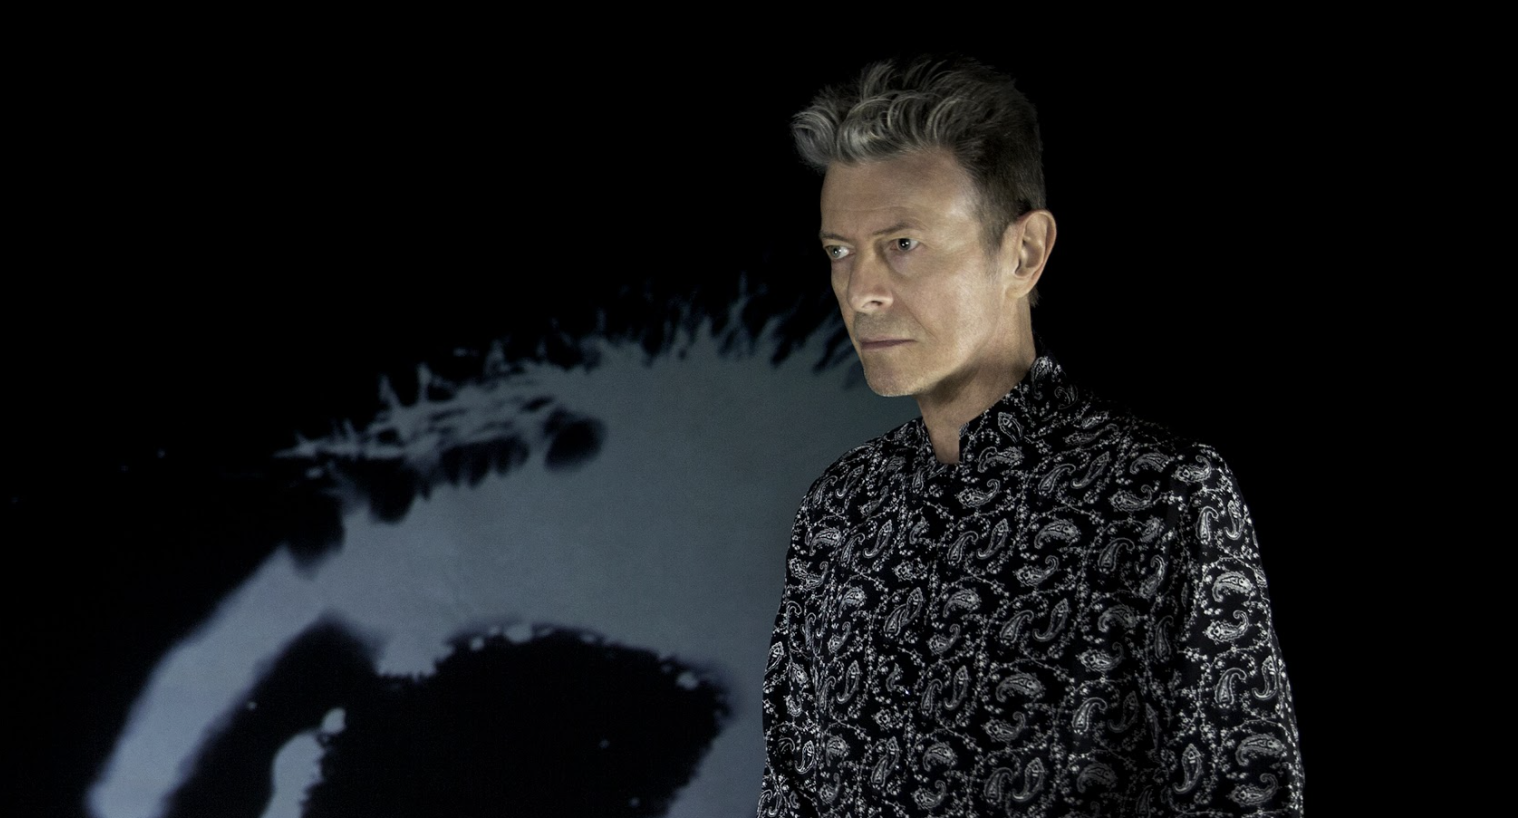 David Bowie music now on TikTok